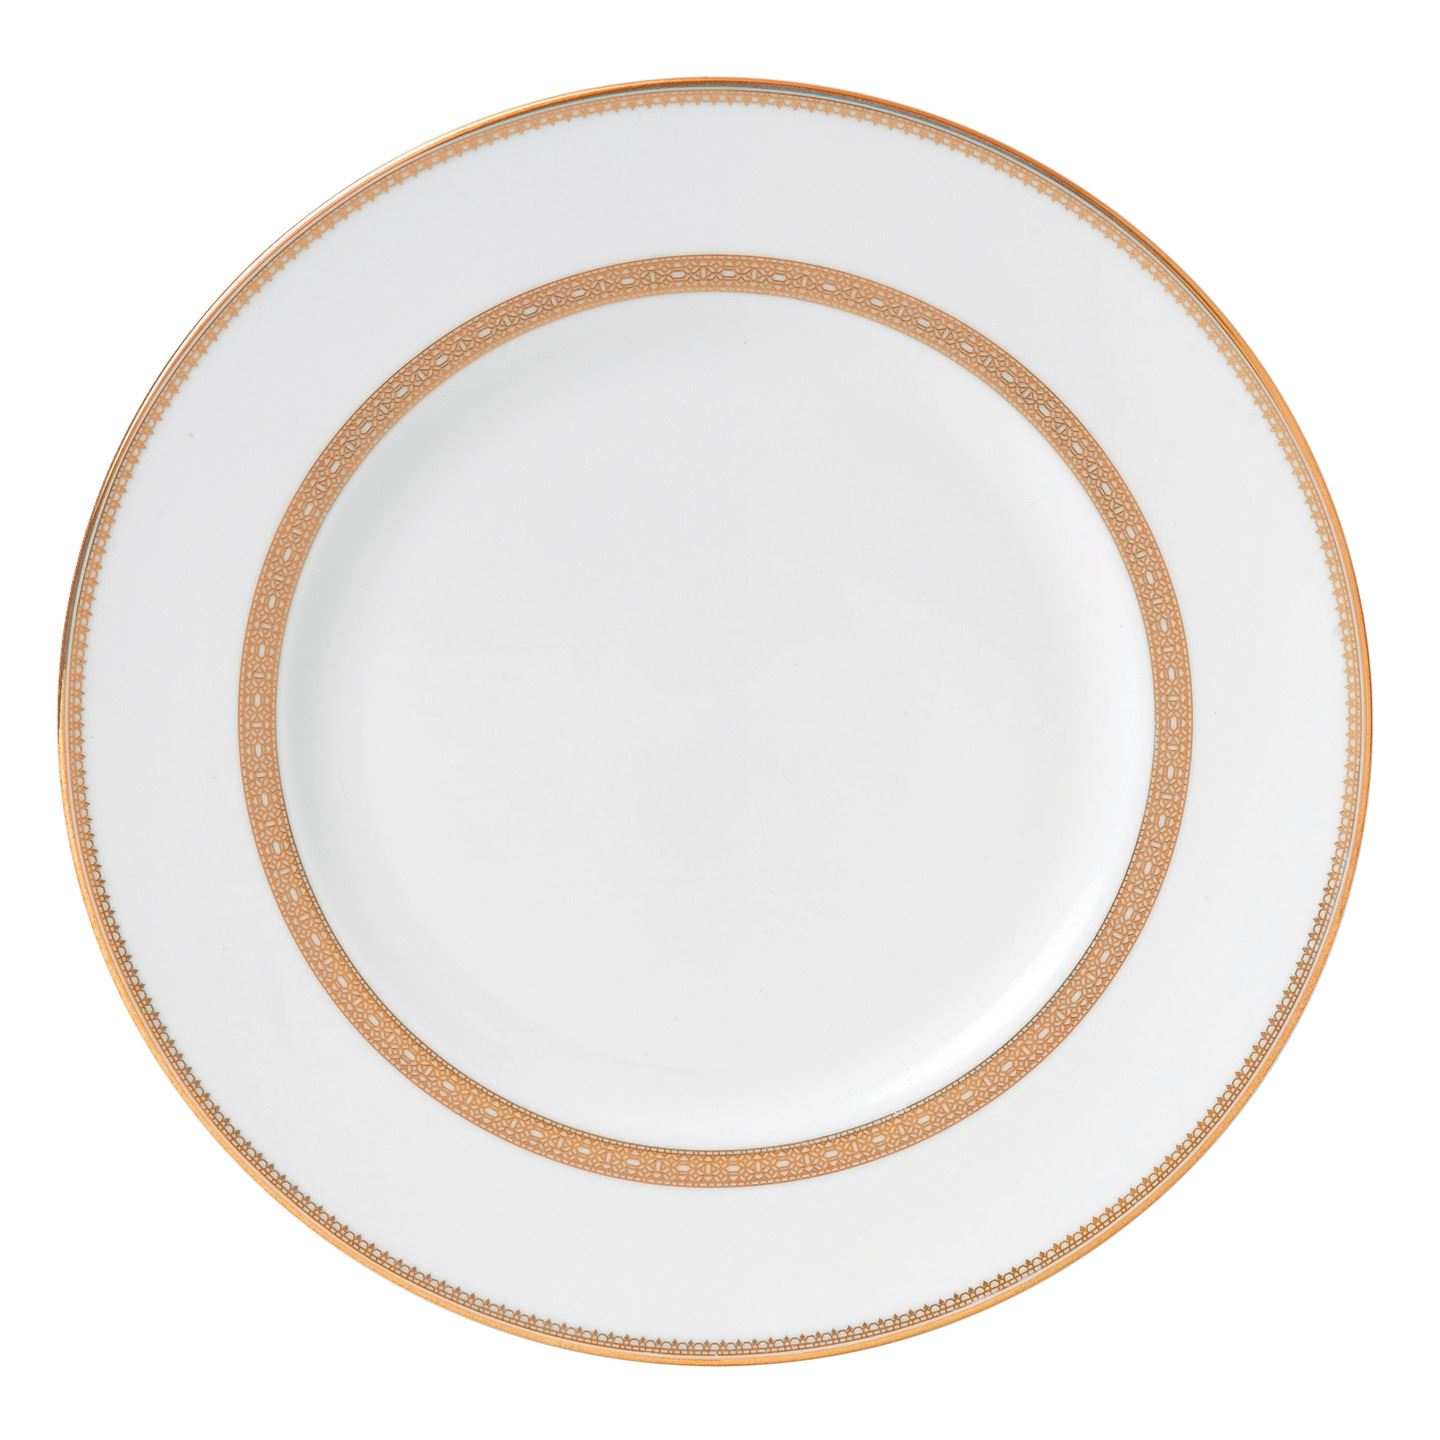 Simplicity Cream Round Dinner Plate 11" Wedgwood Vera Wang Dinnerware 